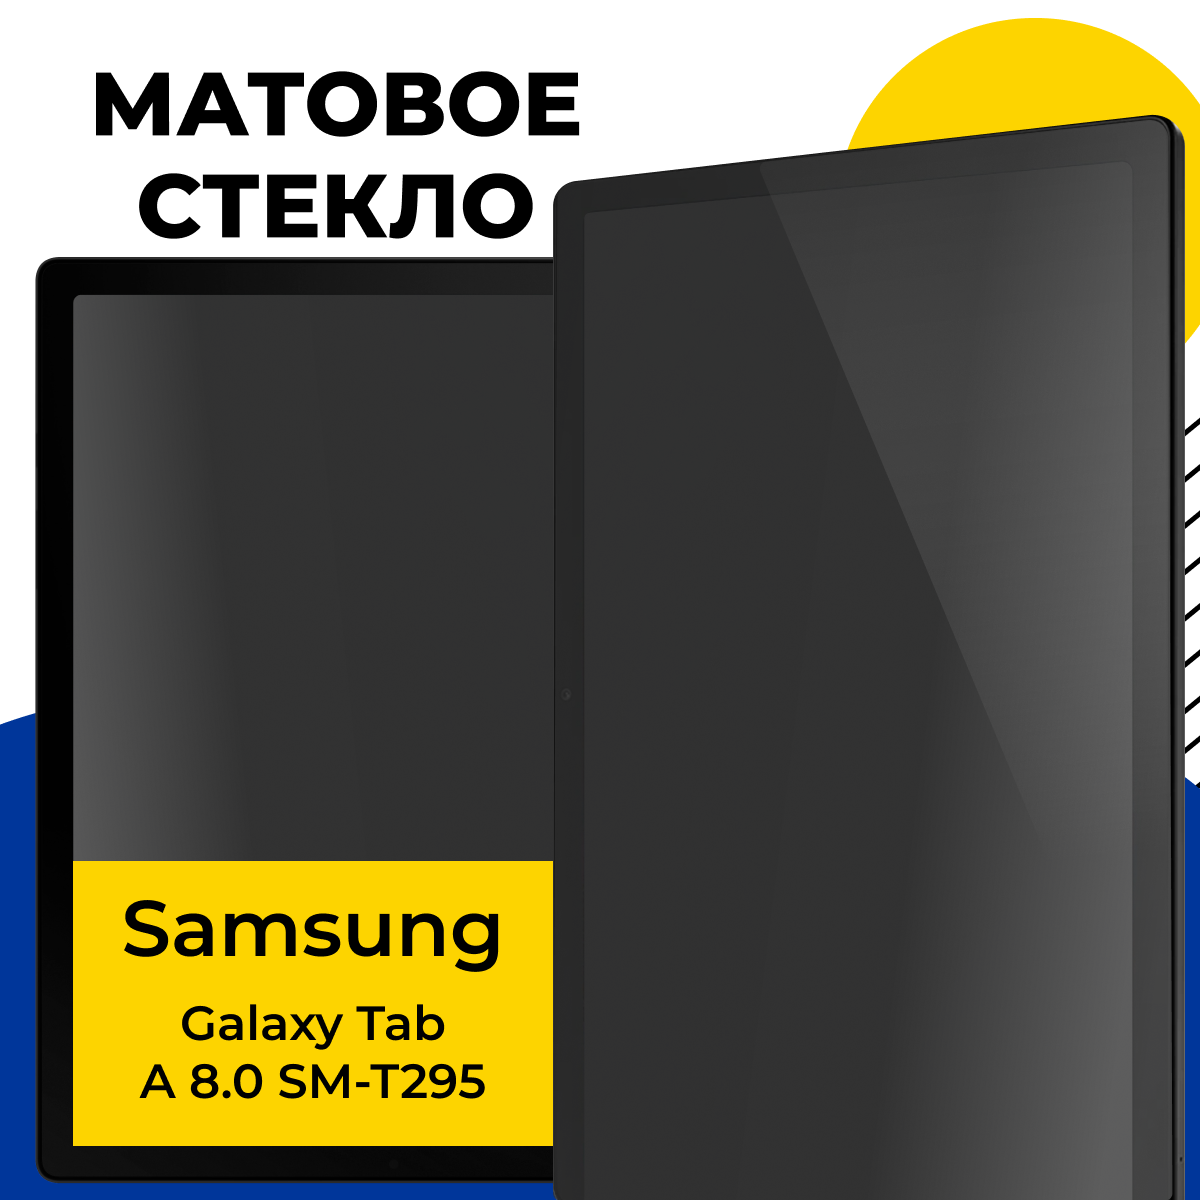 Матовое защитное стекло для планшета Samsung Galaxy Tab A 8.0 SM-T295 / Полноэкранное стекло на планшет Самсунг Галакси Таб А 8.0 СМ-Т295 / Прозрачное